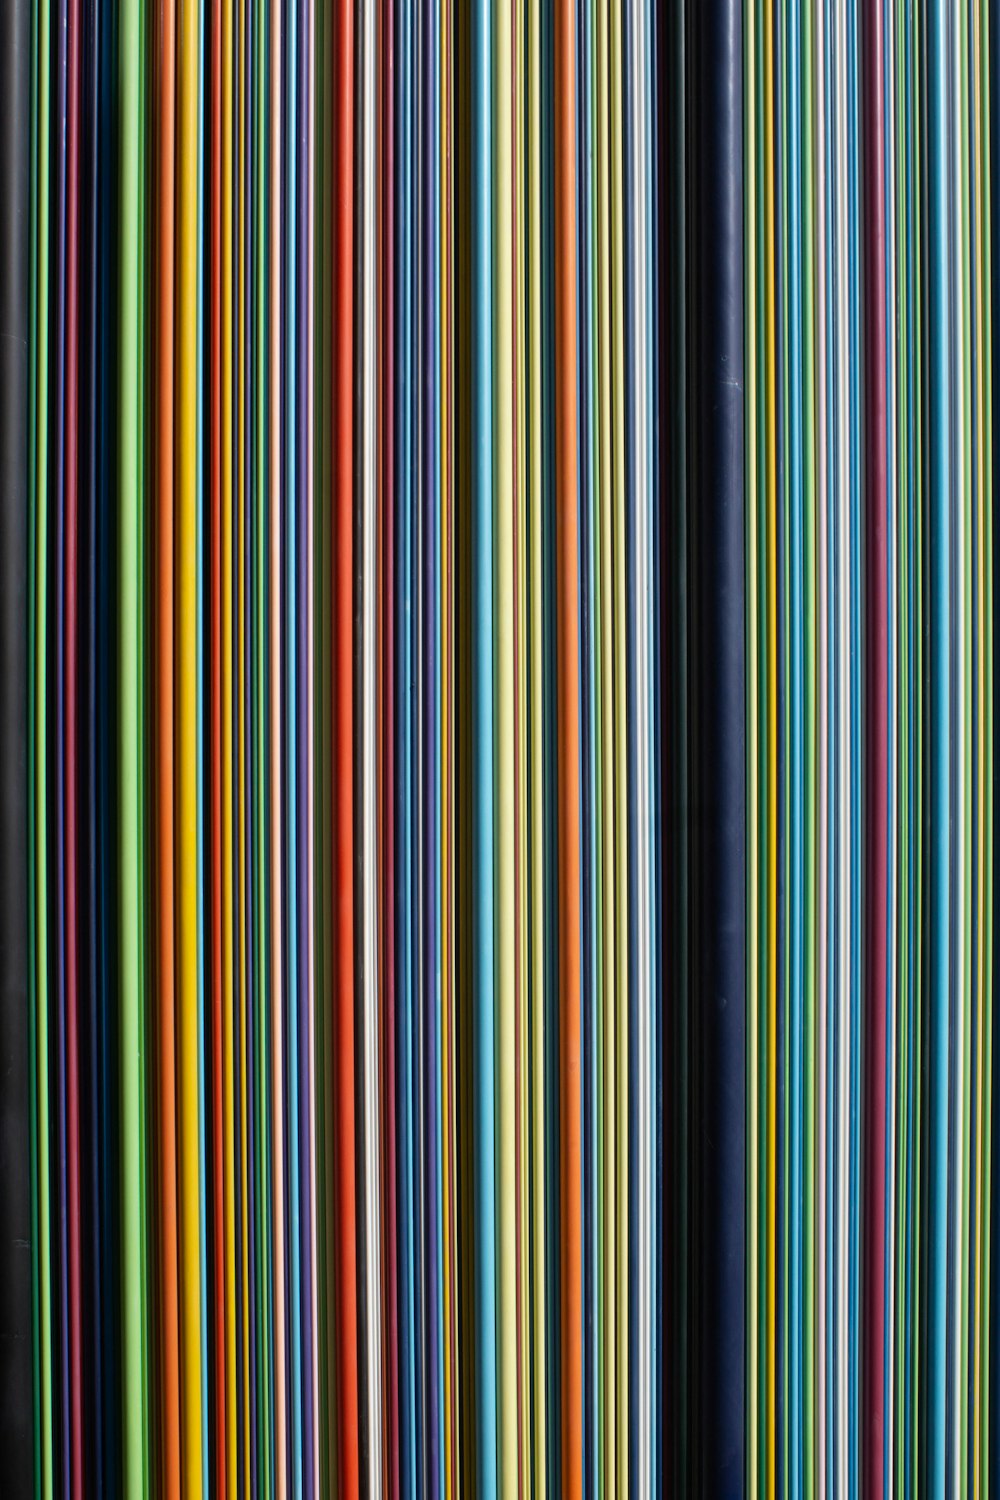 um grupo de linhas coloridas diferentes próximas umas das outras